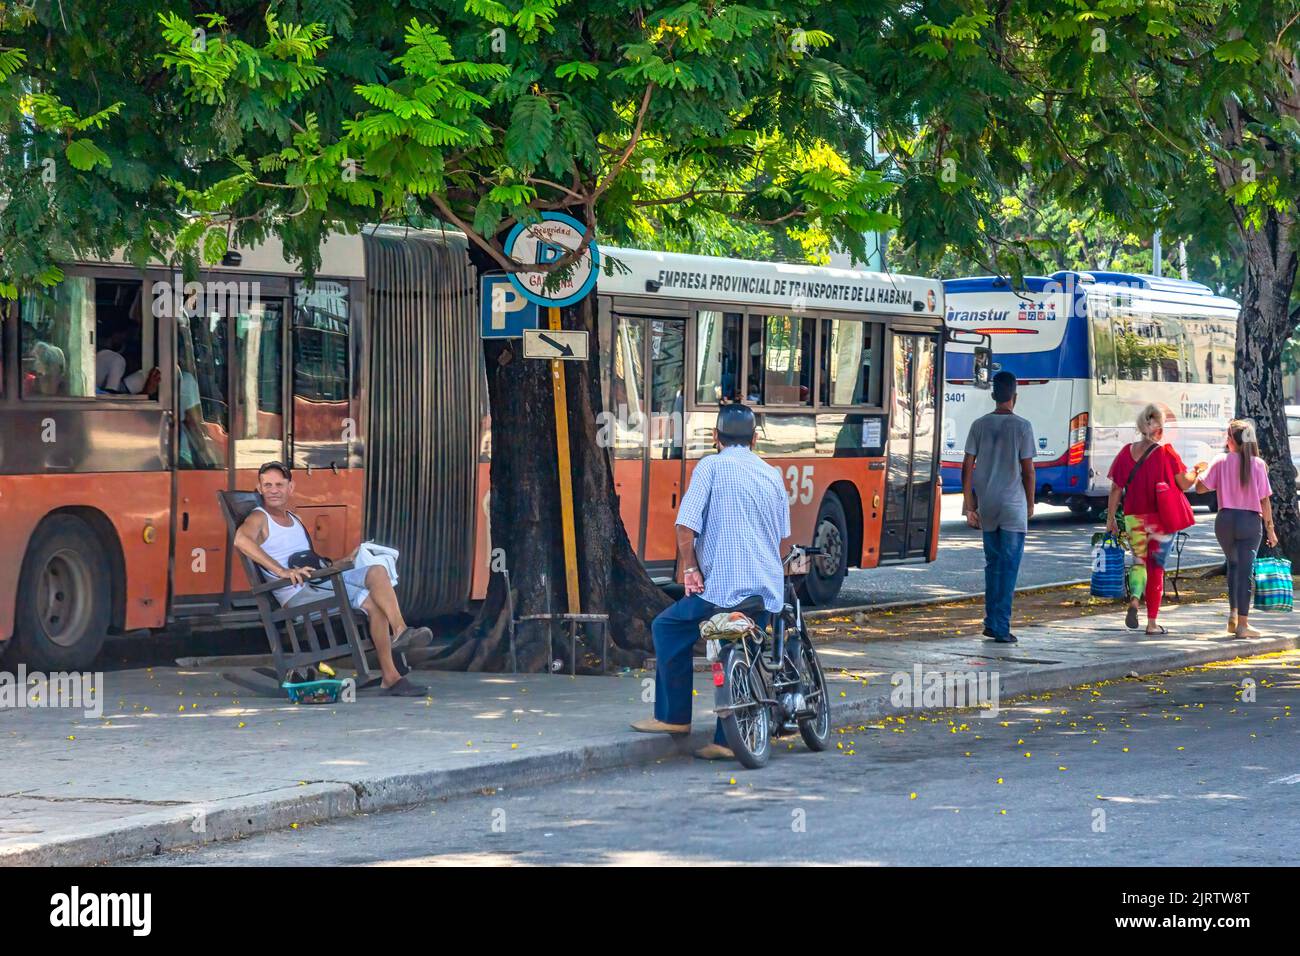 Une personne cubaine est assise dans une chaise berçante à côté d'un arrêt de bus parlant avec un homme dans un cycle. D'autres personnes marchant dans la région. Banque D'Images